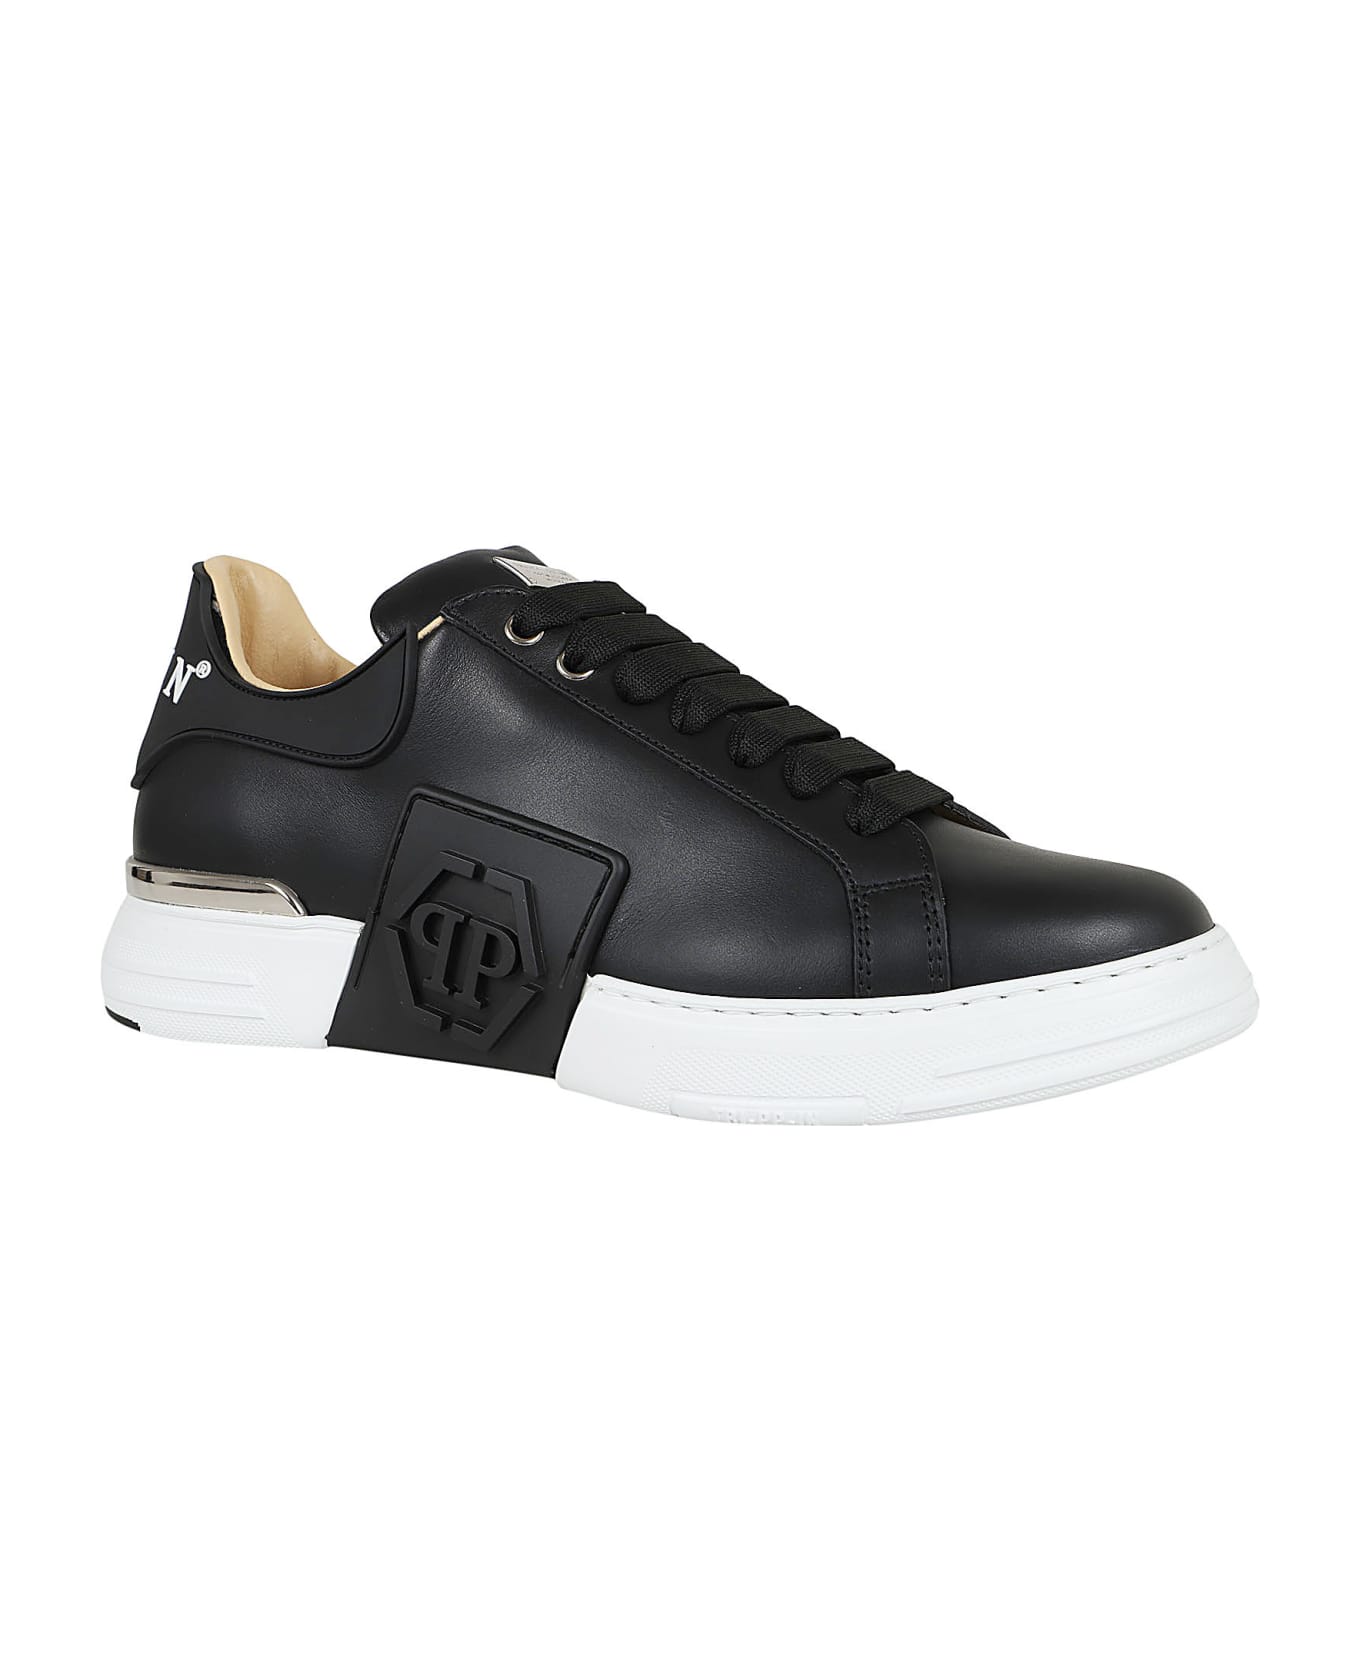 Philipp Plein Lo-top Sneakers Hexagon - Black White